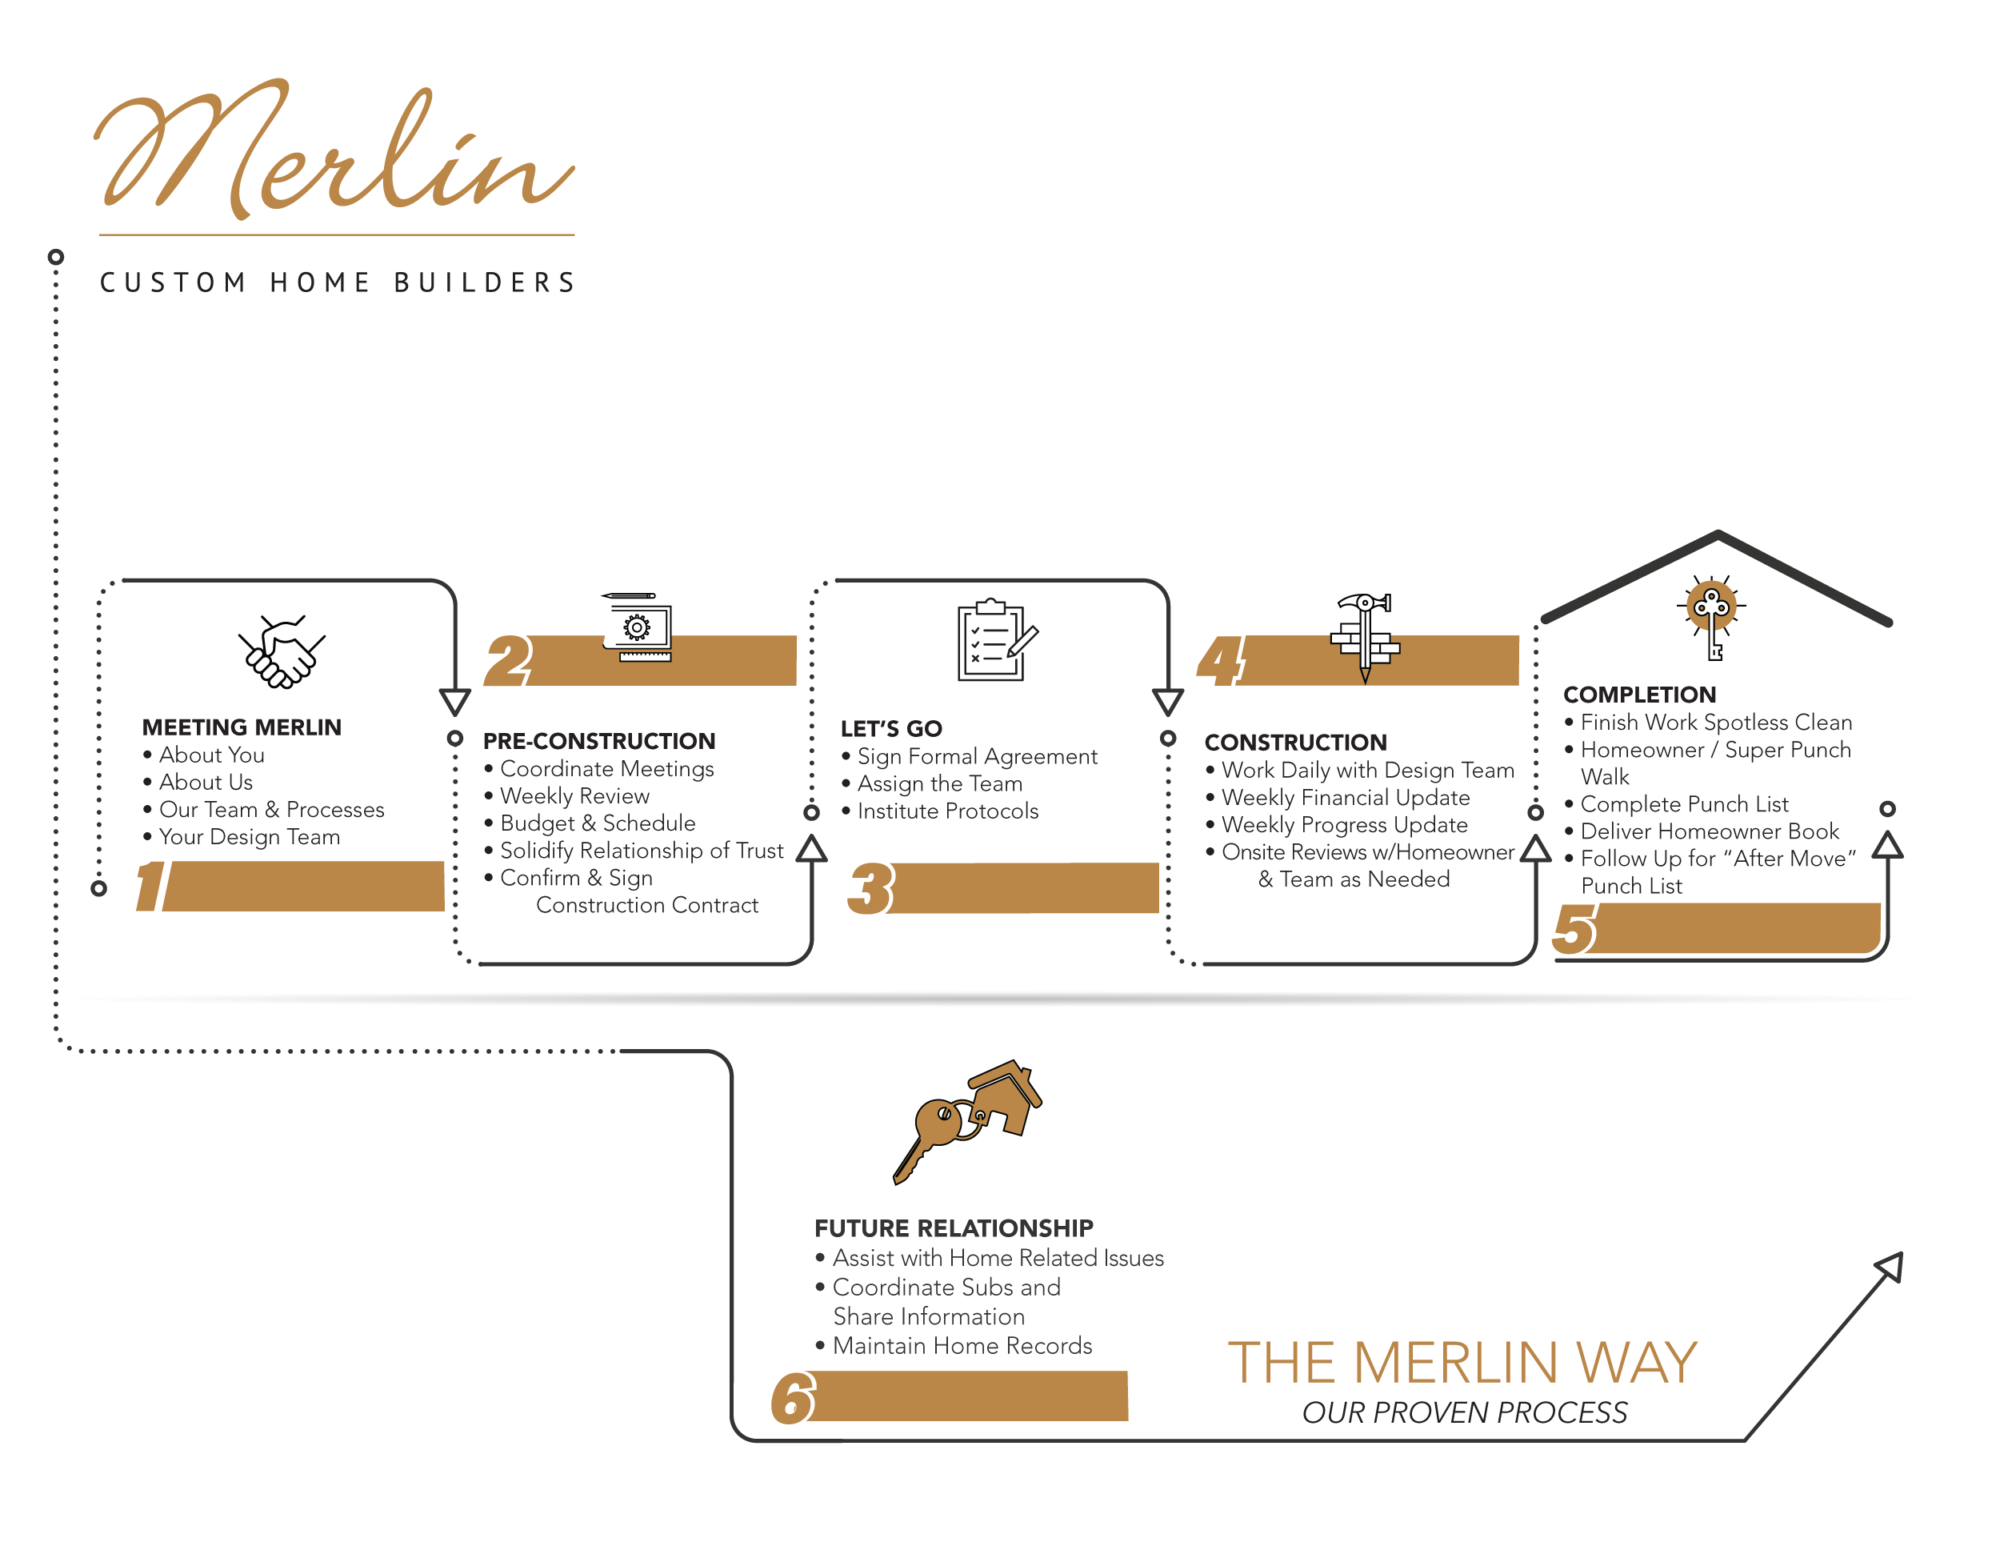 The Best Custom Home Builders - Merlin